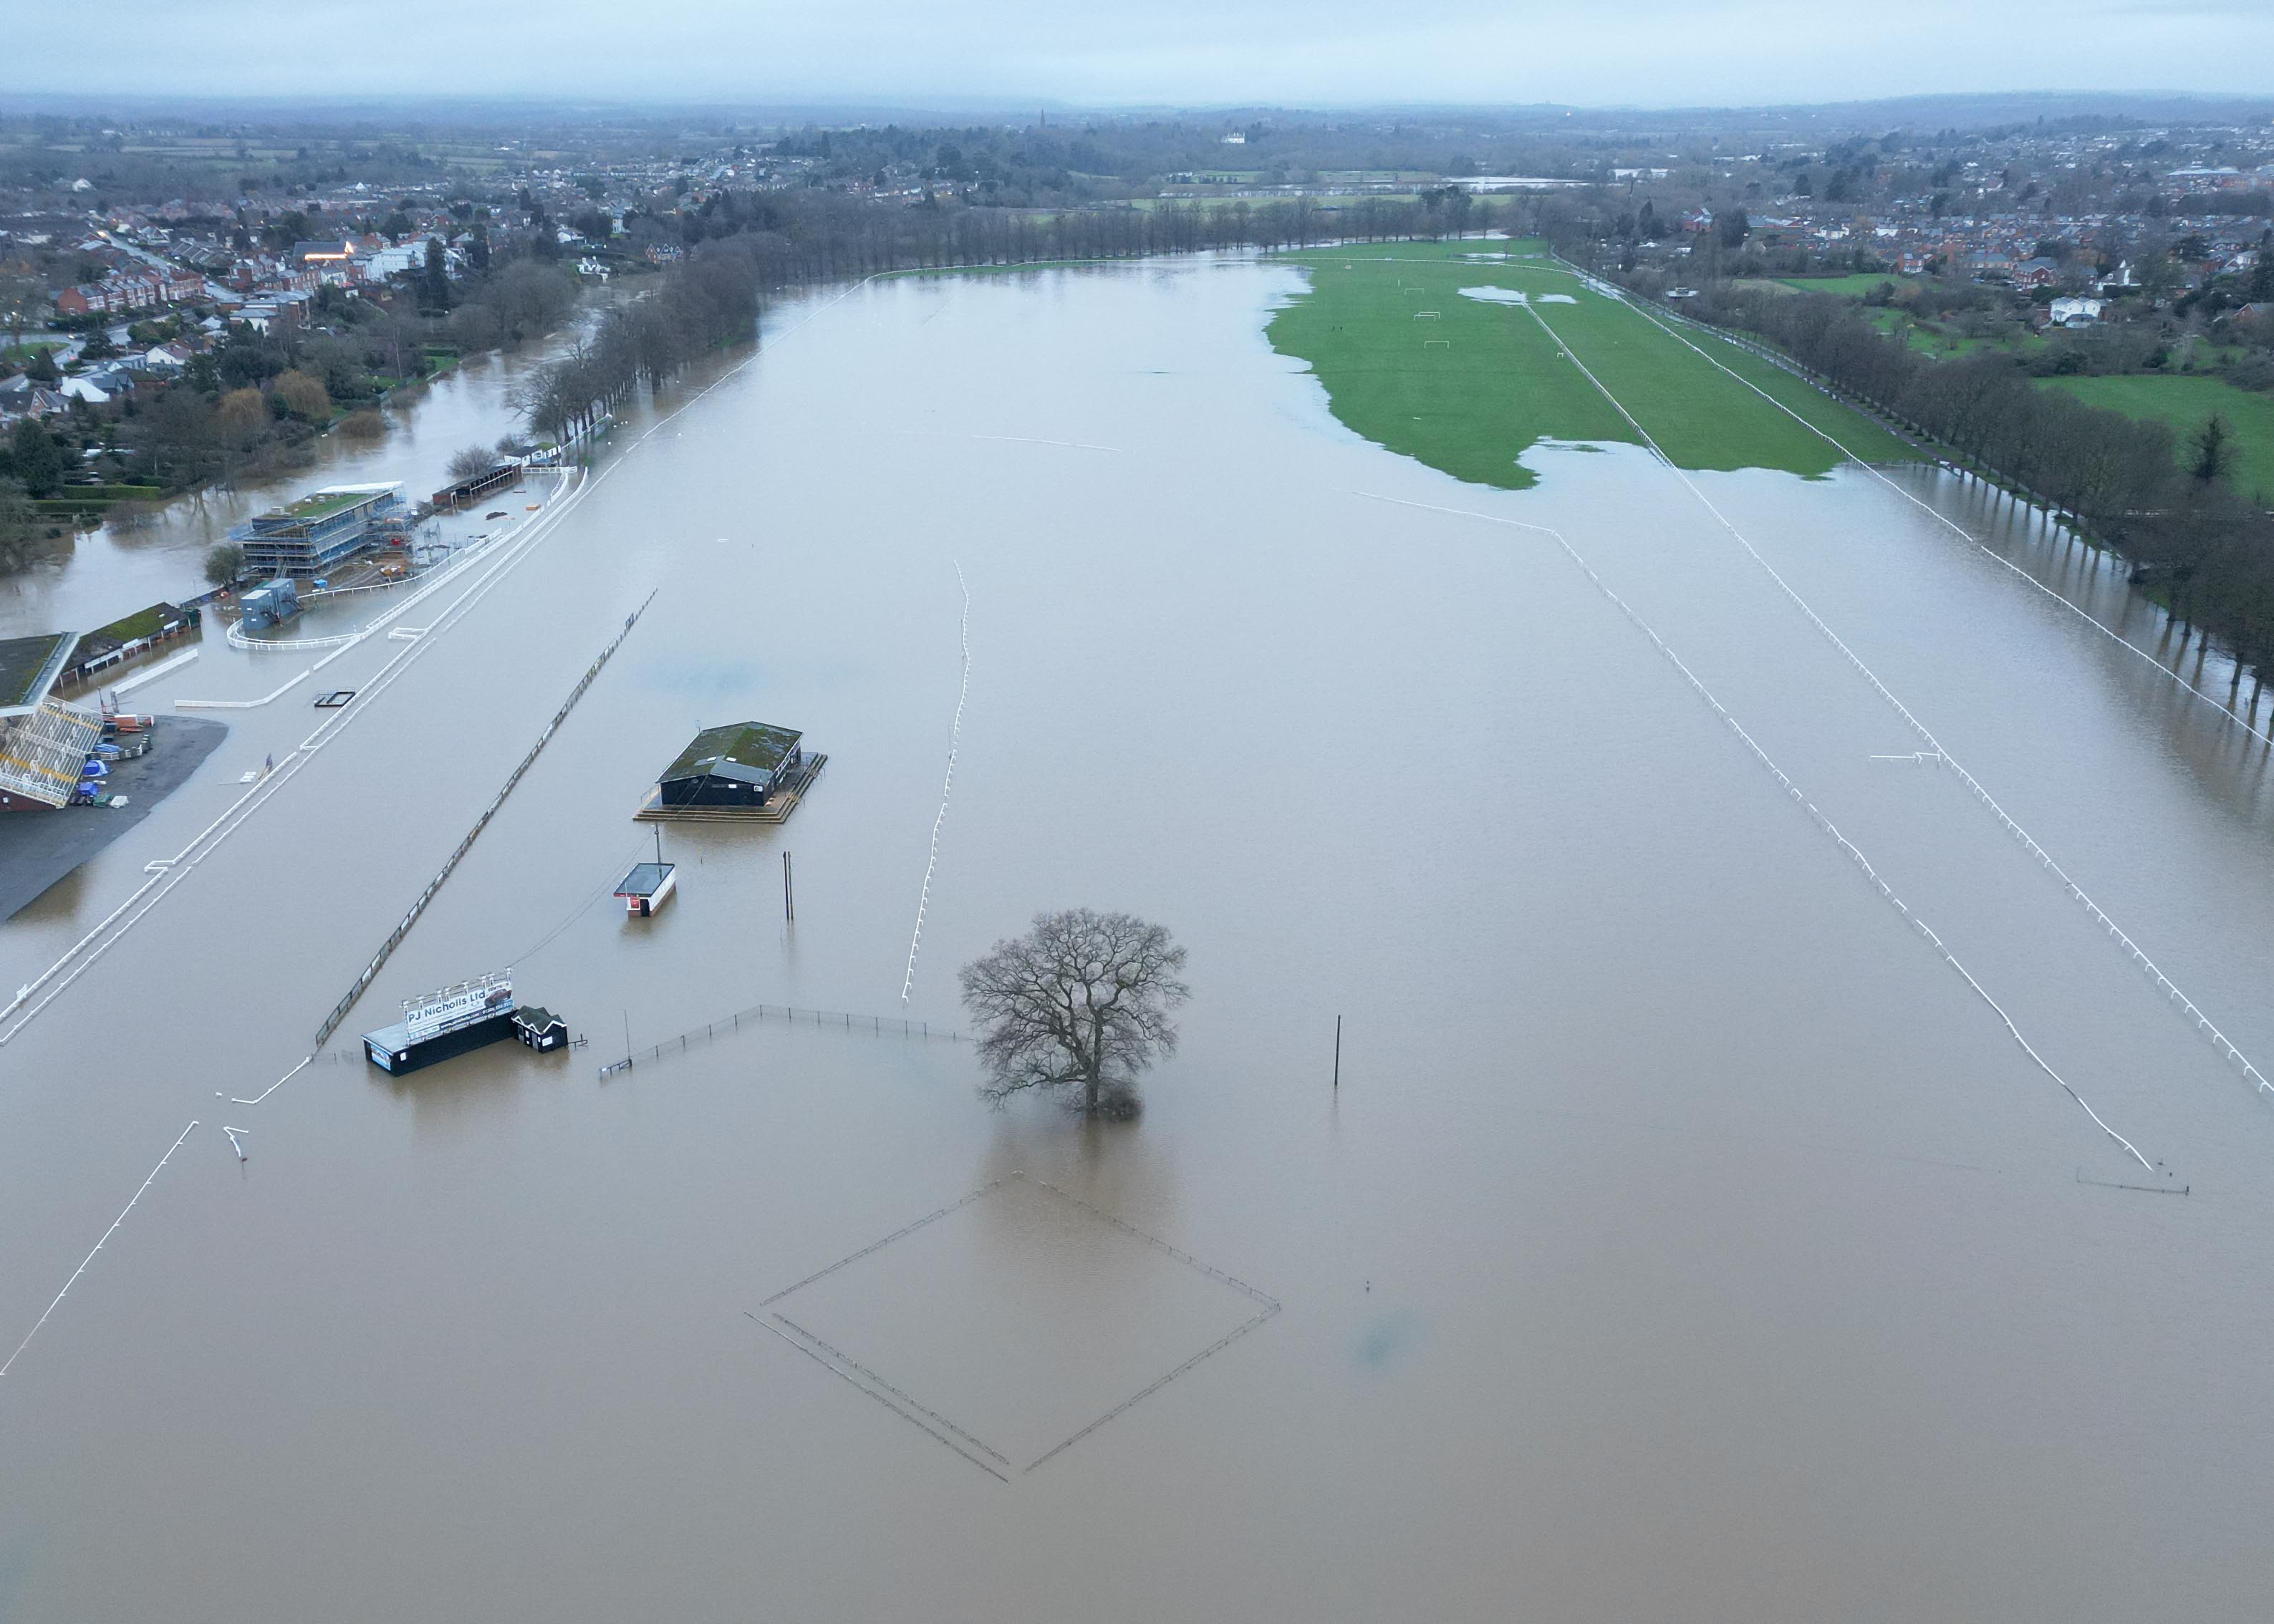 Die Pferderennbahn von Worcester ist heute Morgen überschwemmt, nachdem der Fluss Severn über die Ufer getreten ist